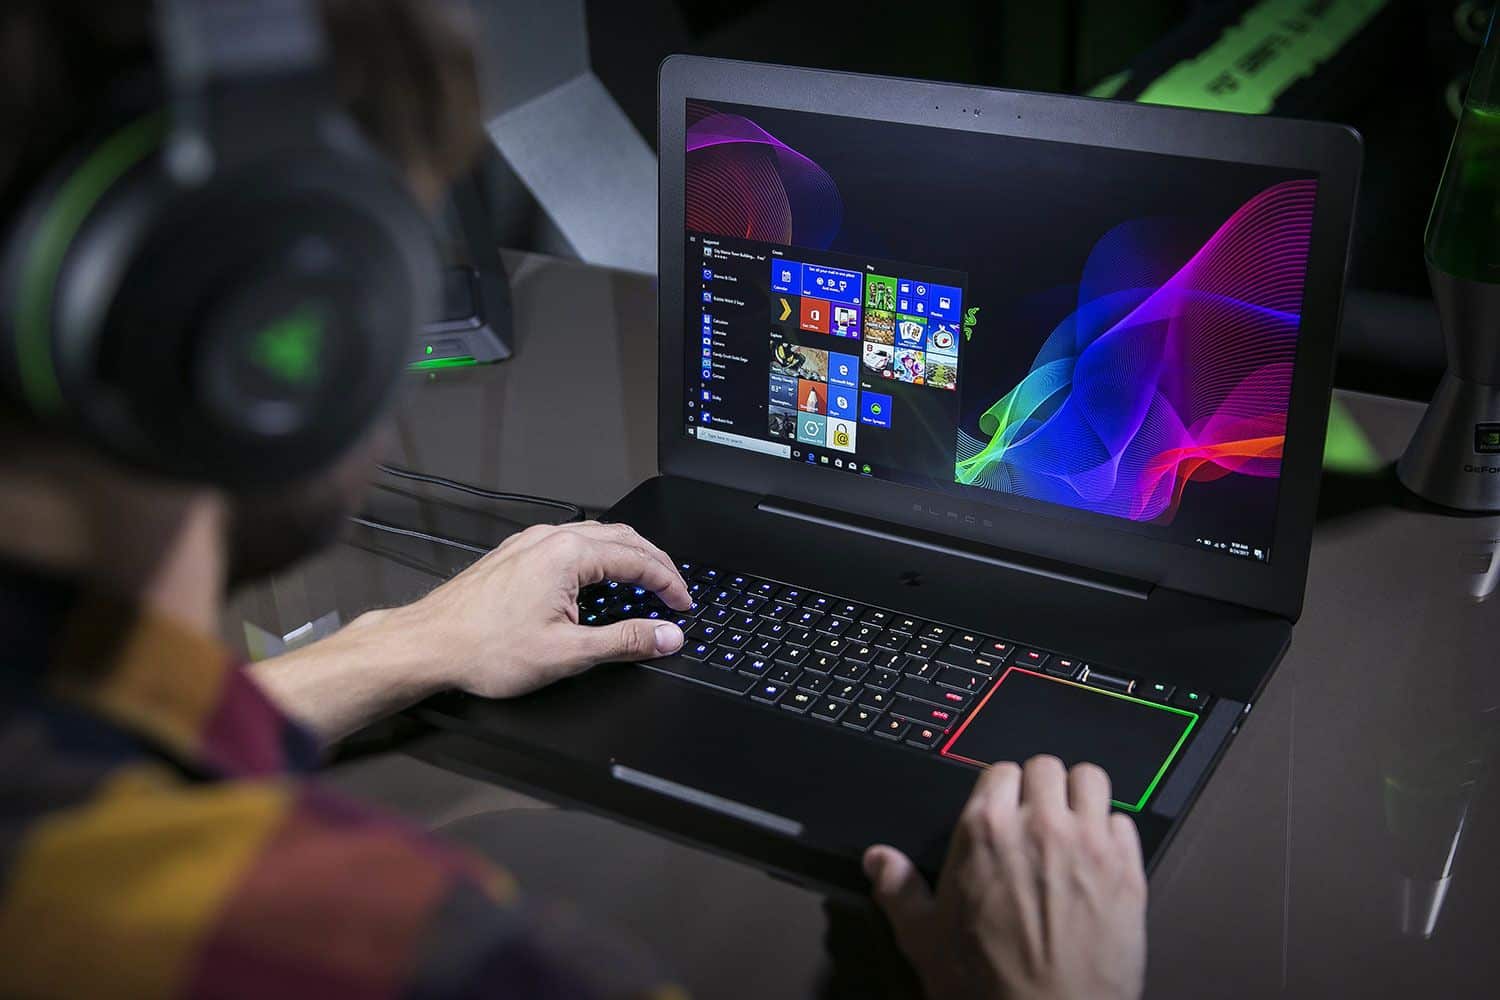 Rekomendasi Laptop Gaming Murah Terbaik 2020 - Thegorbalsla